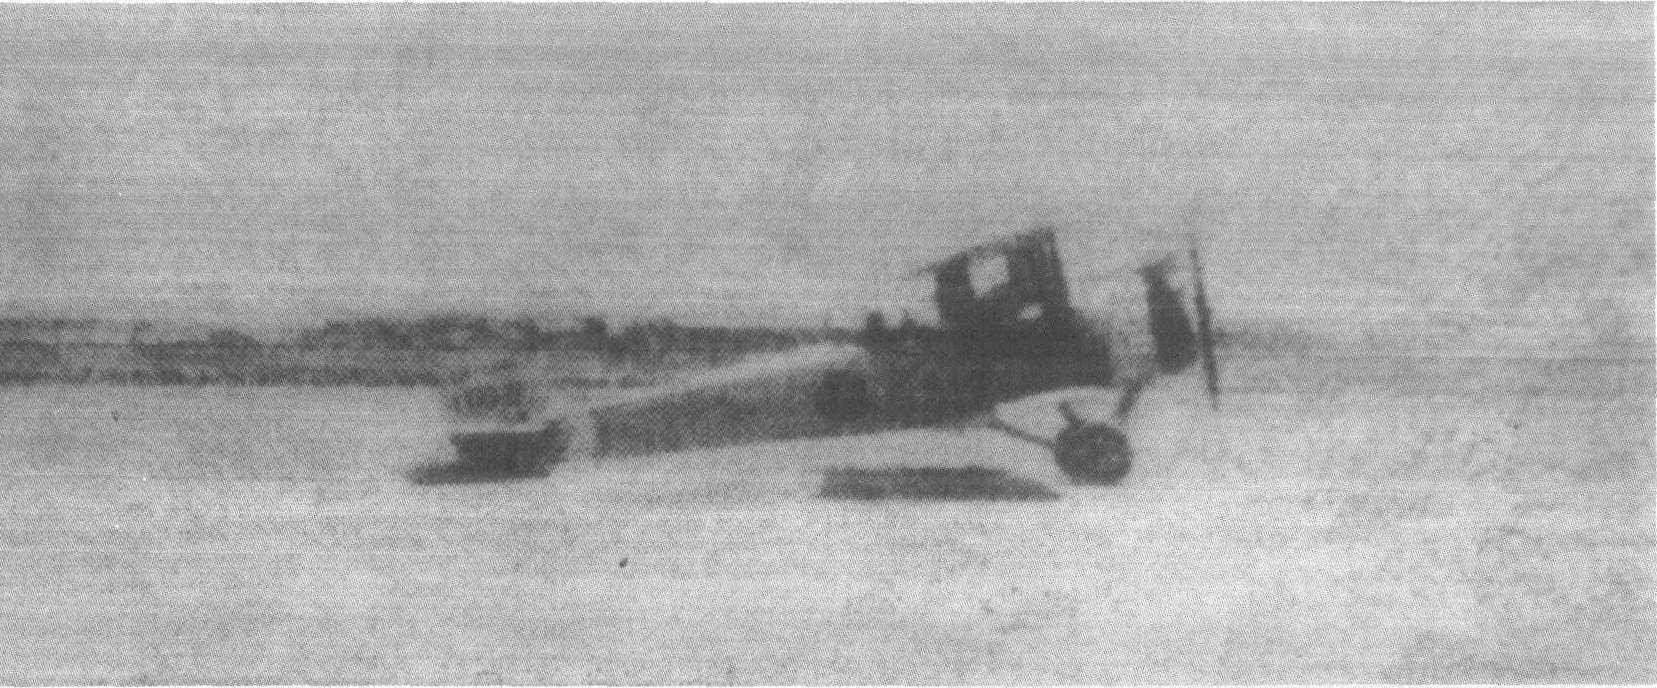 1928年6月9日飞抵八里台机场的第一架日军战斗机停落在机场的日本战斗机